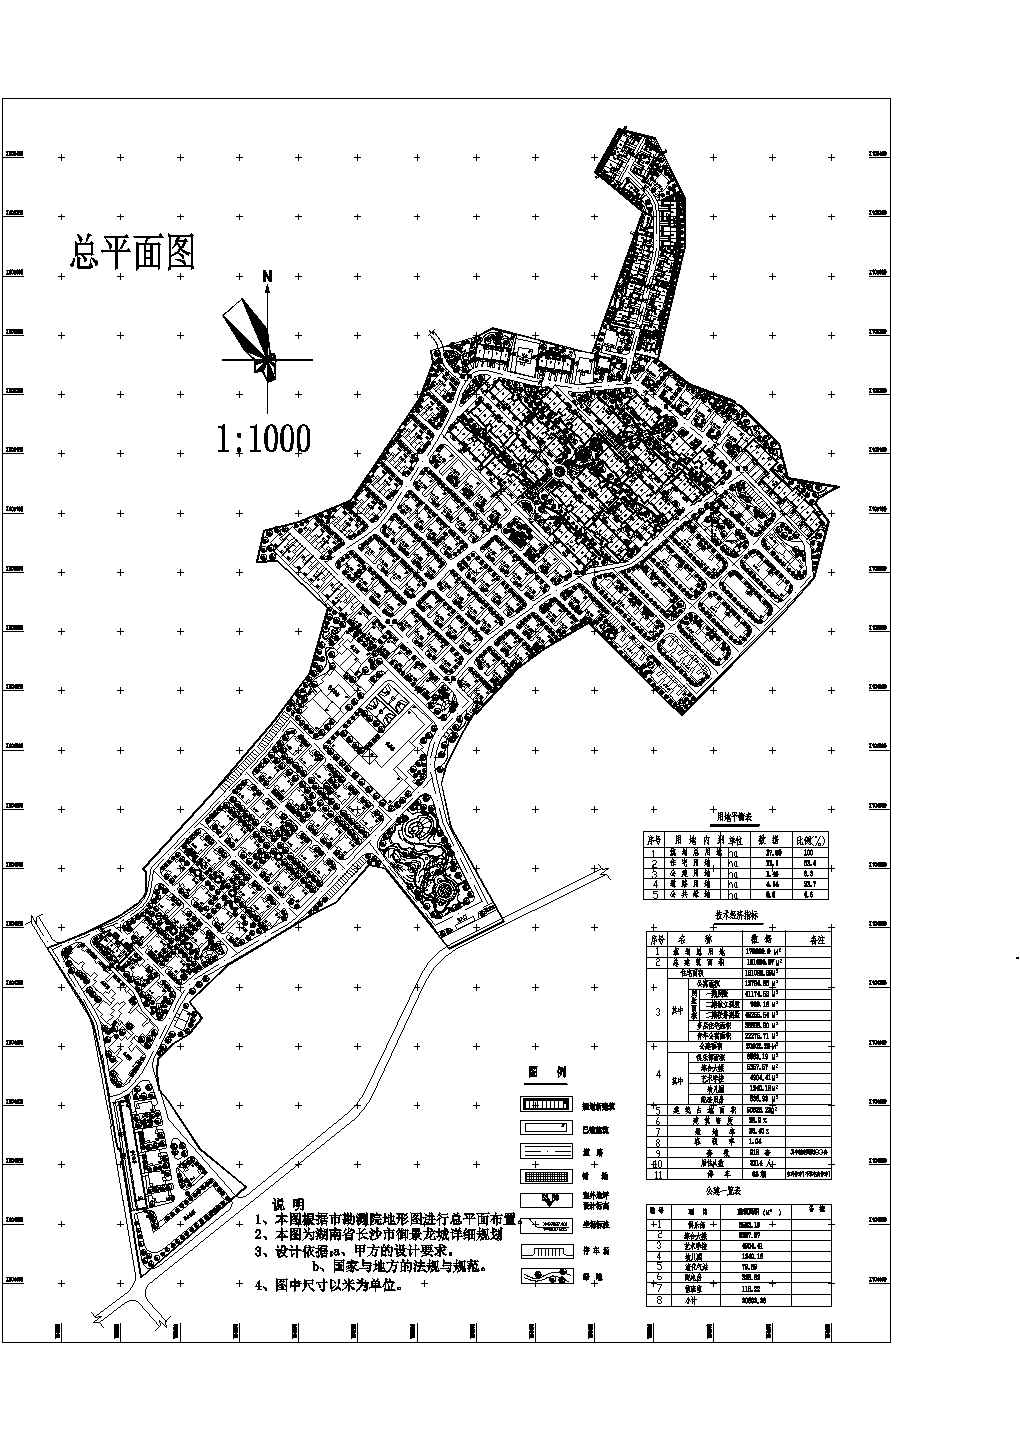 规划总用地17.5ha别墅小区规划总平面CAD图